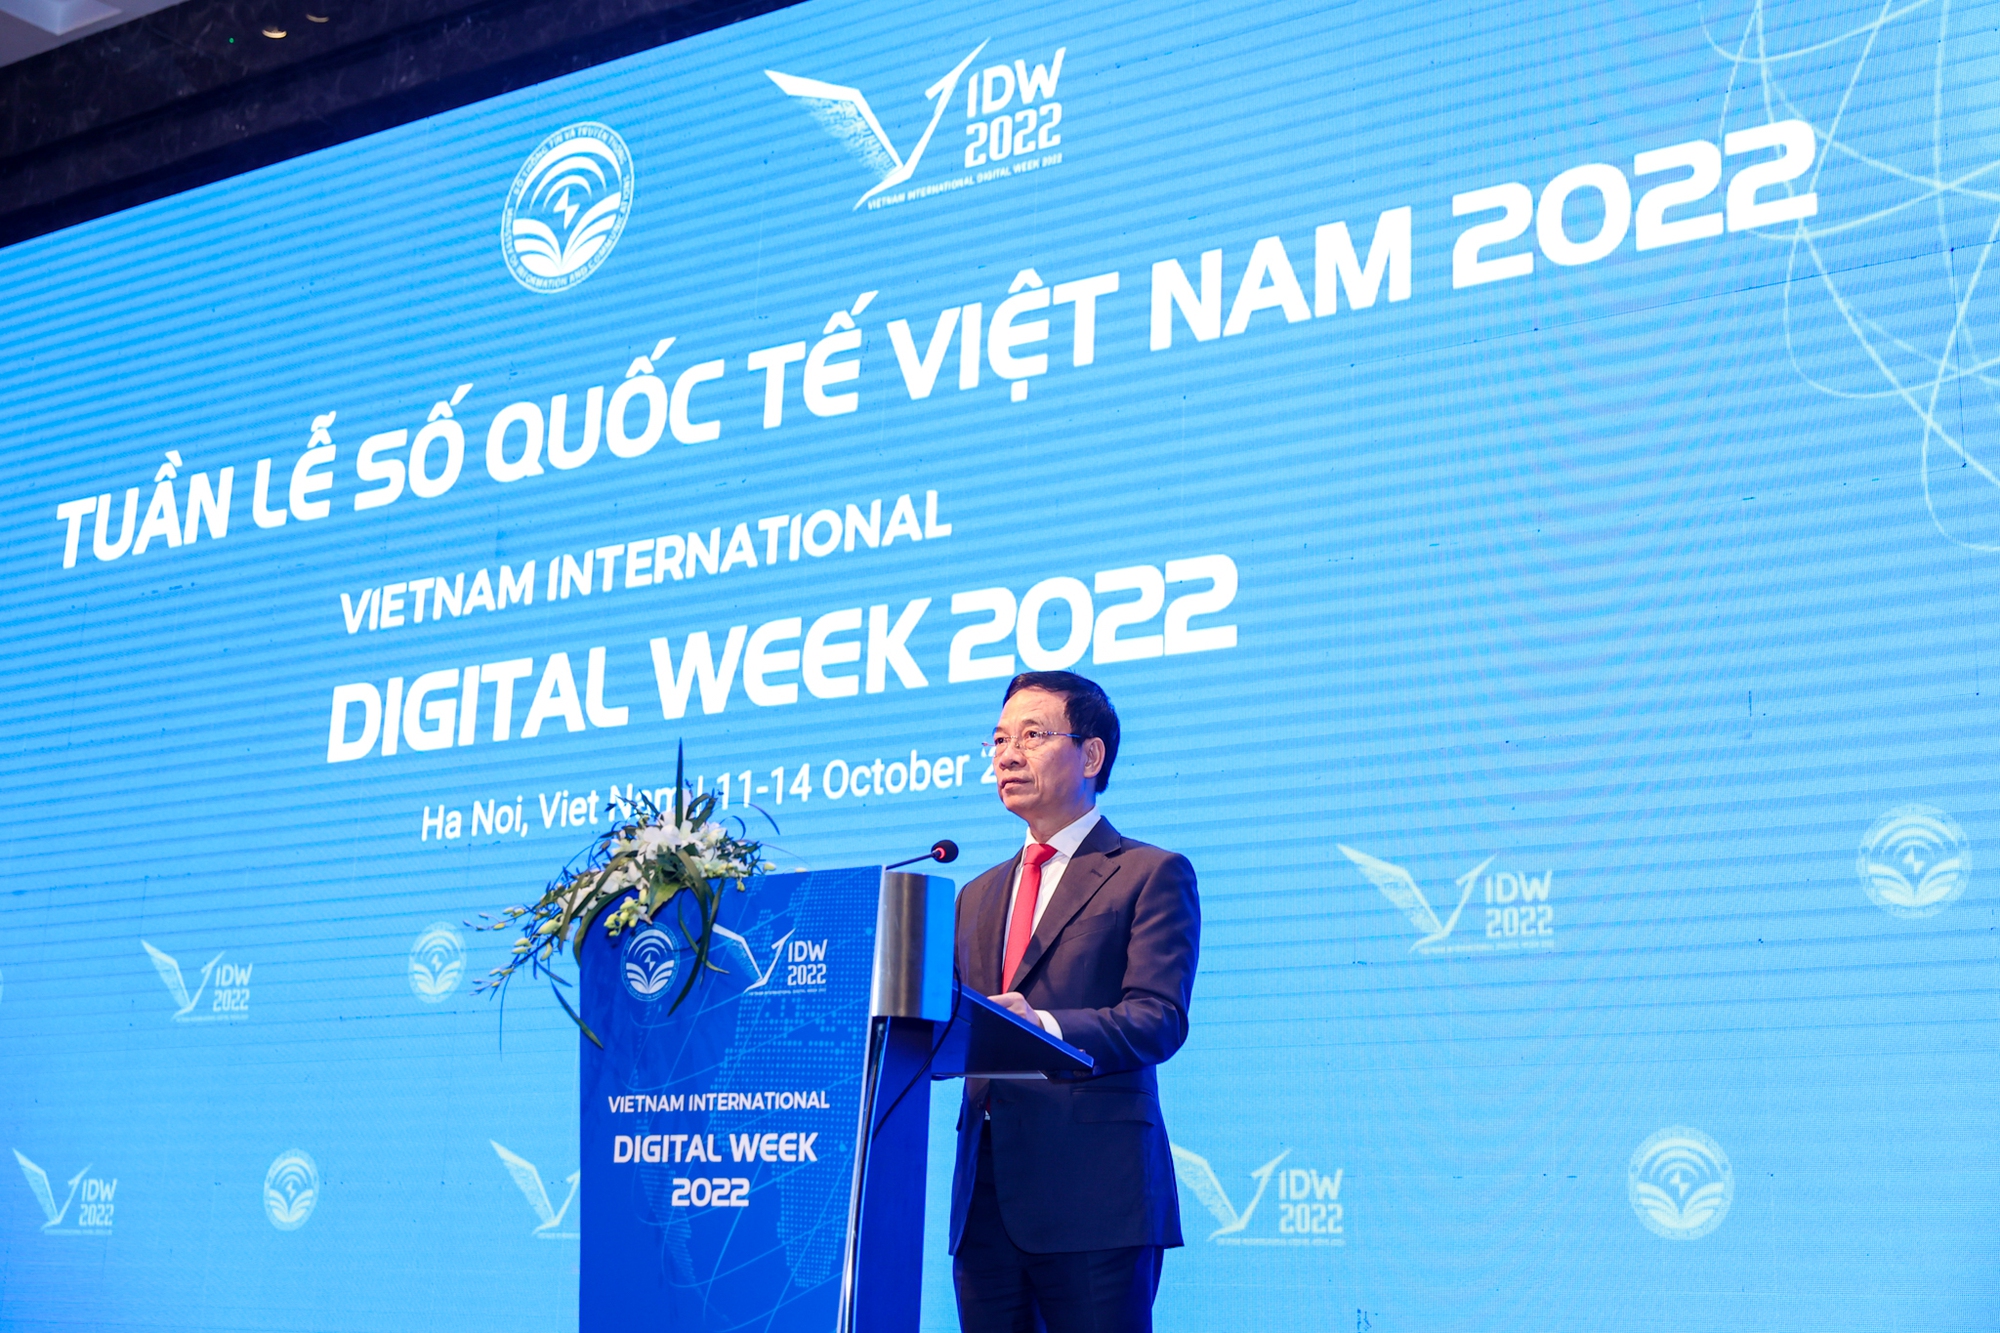 Tuần lễ Số quốc tế Việt Nam 2022 chính thức khai mạc lần đầu tiên tại Hà Nội - Ảnh 1.